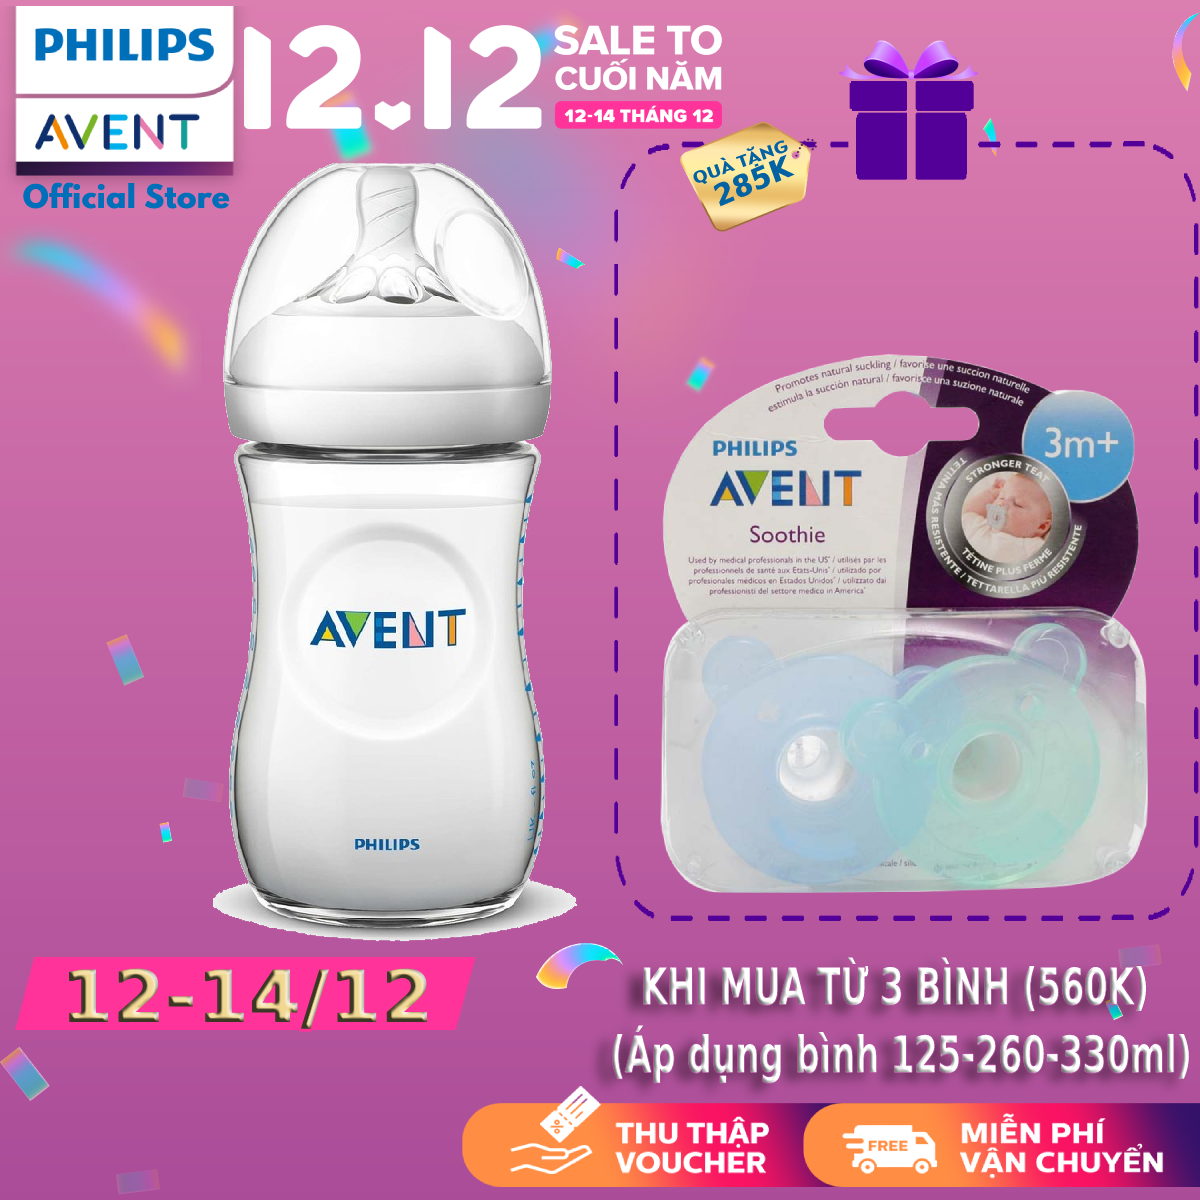 Bình sữa Philips Avent bằng nhựa không có BPA 260ml – đơn (SCF693/13) – cho trẻ từ 1 tháng tuổi